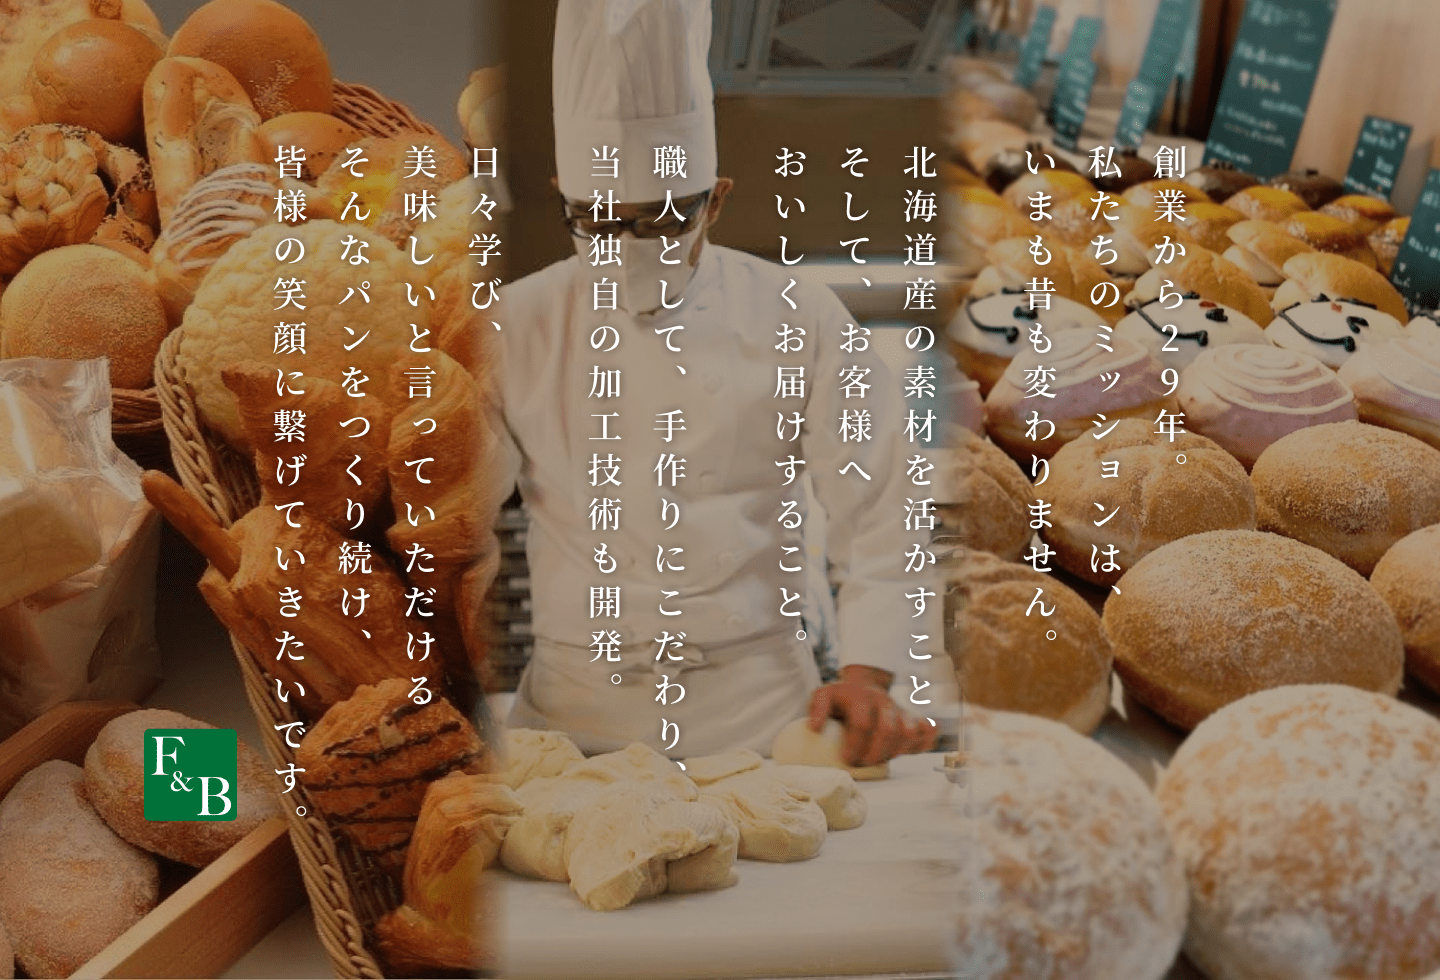 フーズアンドブレッドは、北海道産の素材にこだわり、パンづくりにひたすら29年。これからも、お客様の笑顔につながる美味しいパンをお届けしていきます。